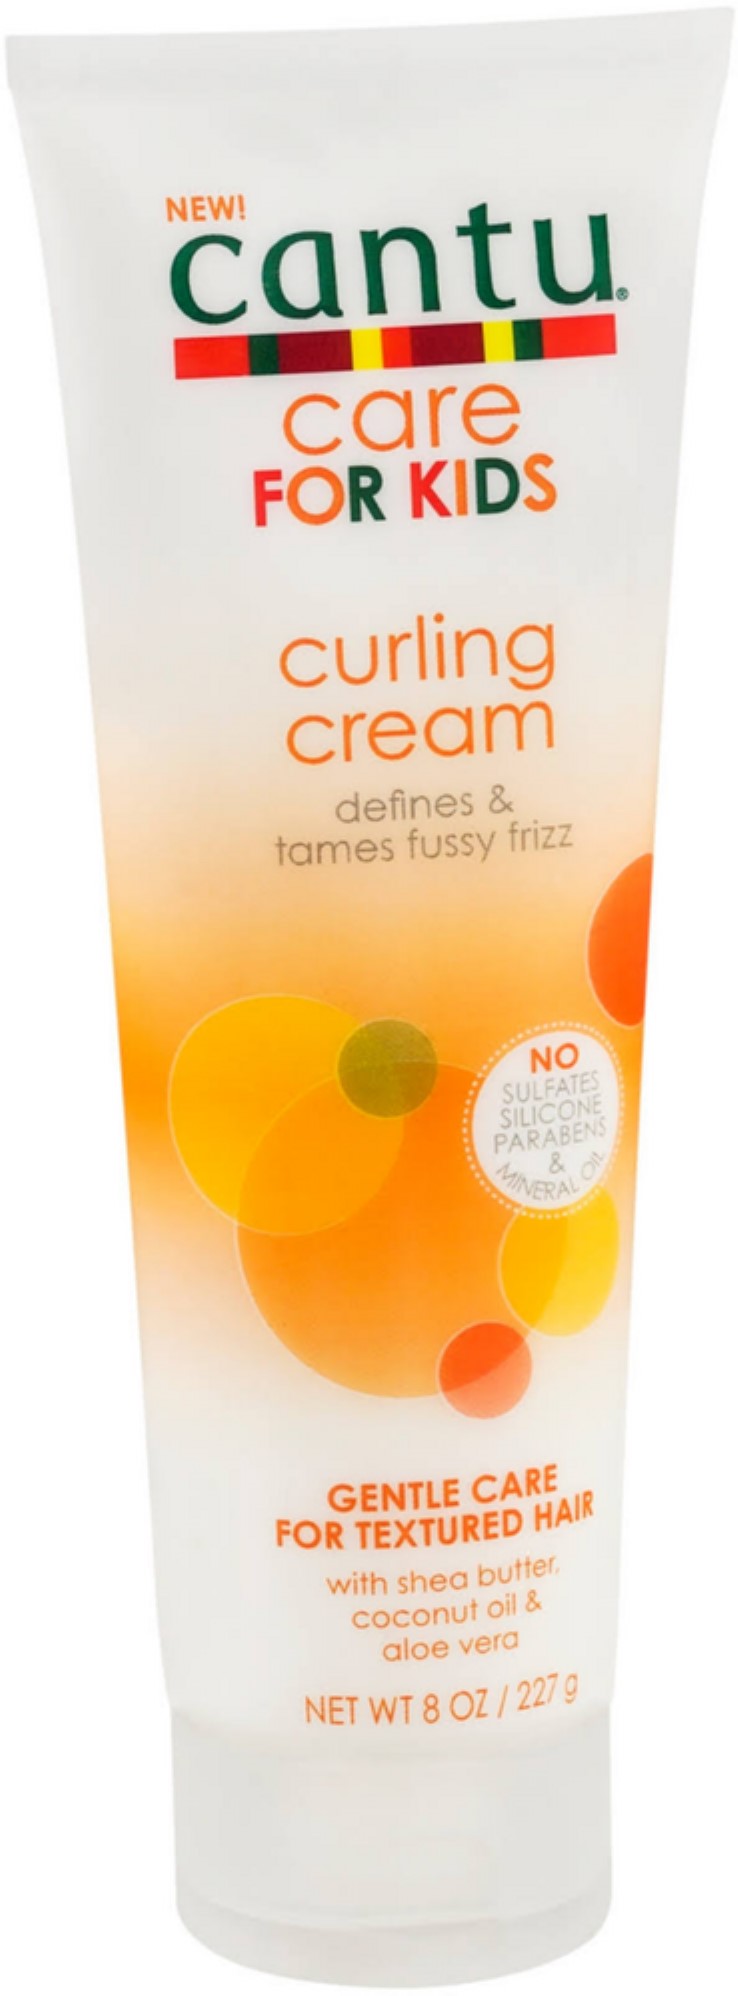 Cantu Care for Kids Curling Cream  8 oz